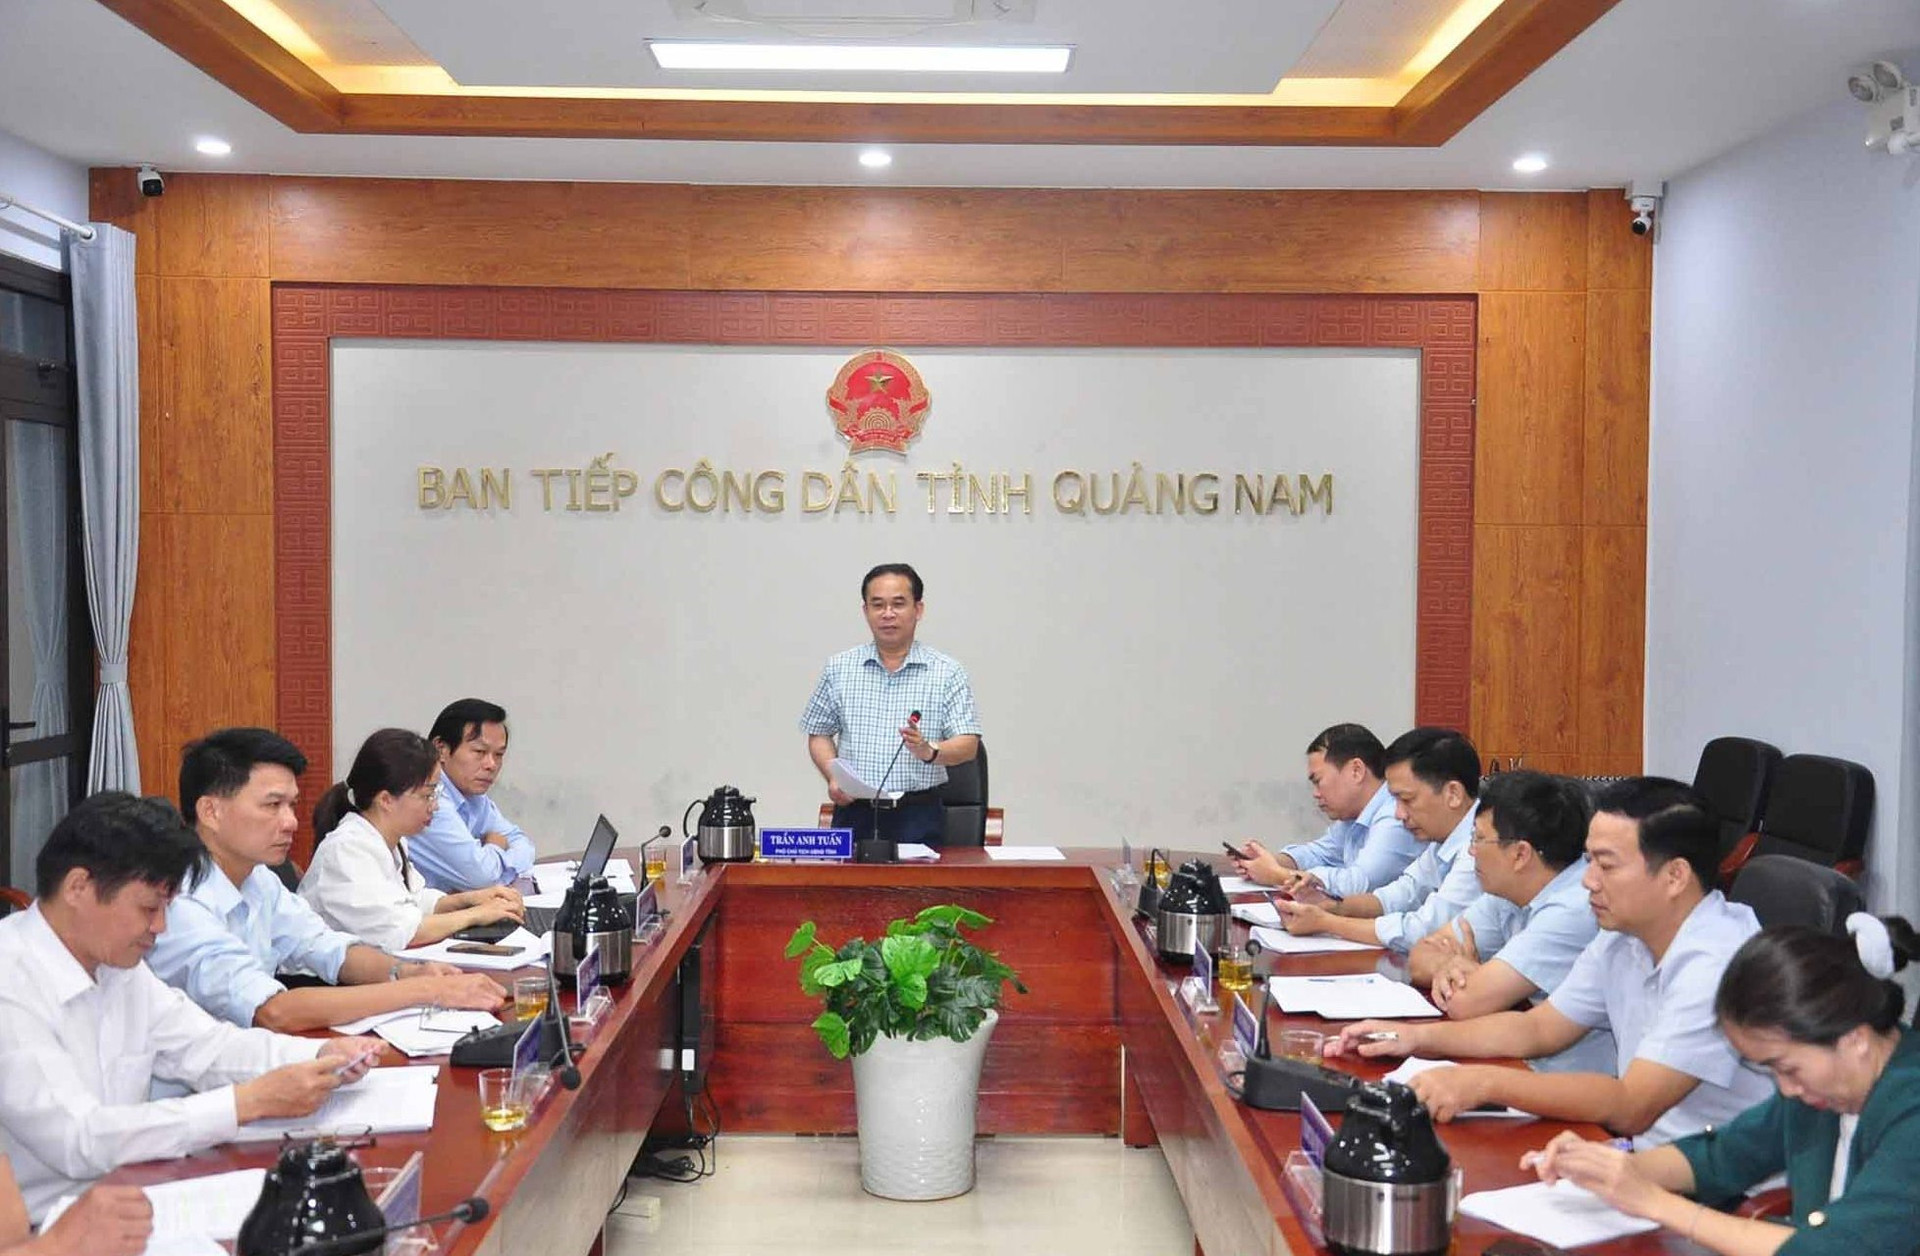 Phó Chủ tịch UBND tỉnh Trần Anh Tuấn chủ trì buổi tiếp công dân định kỳ tháng 11. Ảnh: V.A